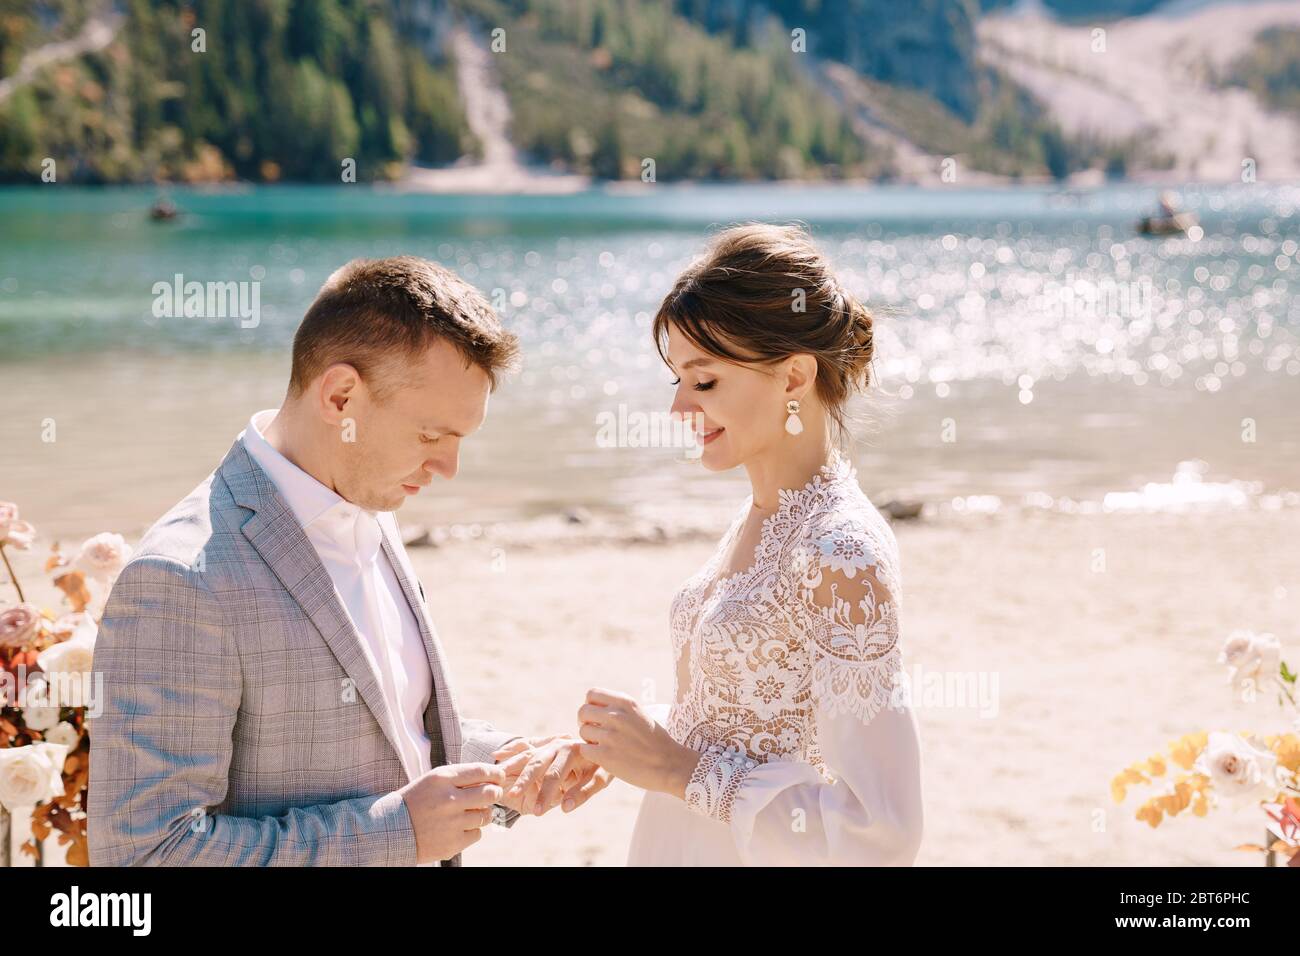 Le marié met un anneau à la mariée, au lieu de la cérémonie, avec une arche de colonnes de fleurs d'automne, sur fond de Lago di Braies dedans Banque D'Images